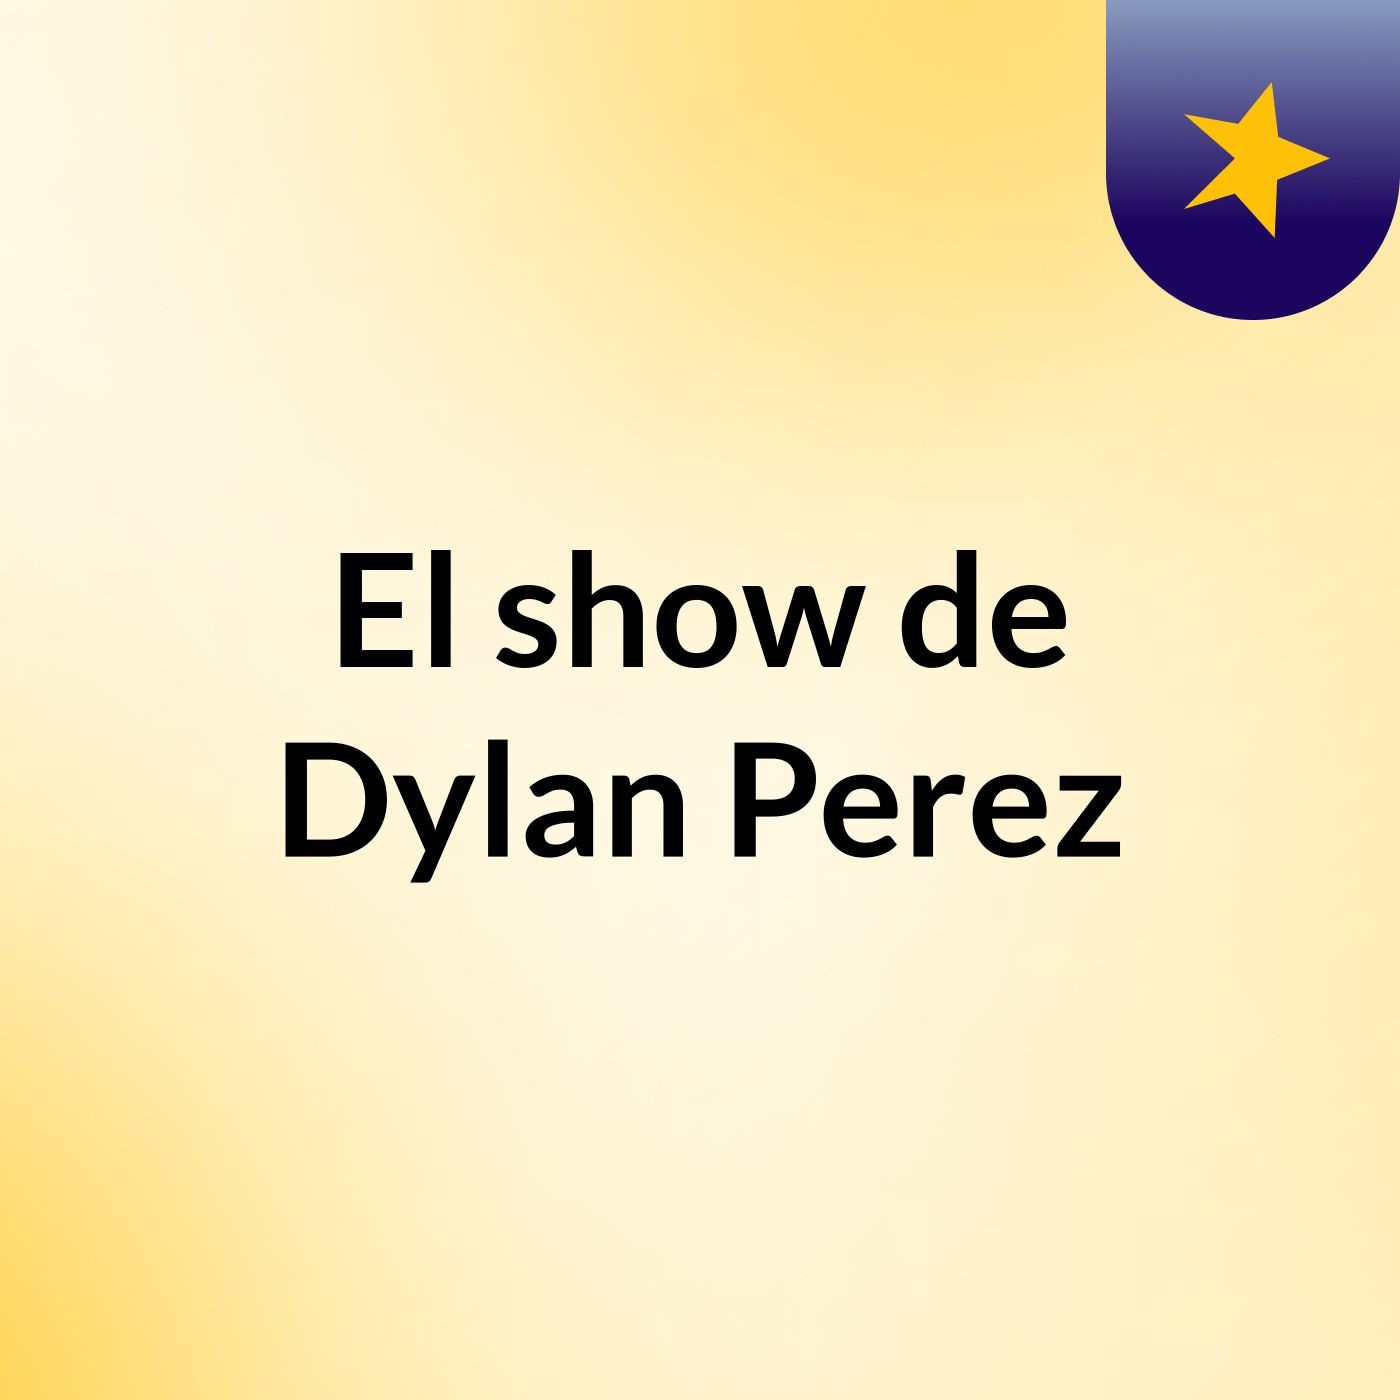 El show de Dylan Perez